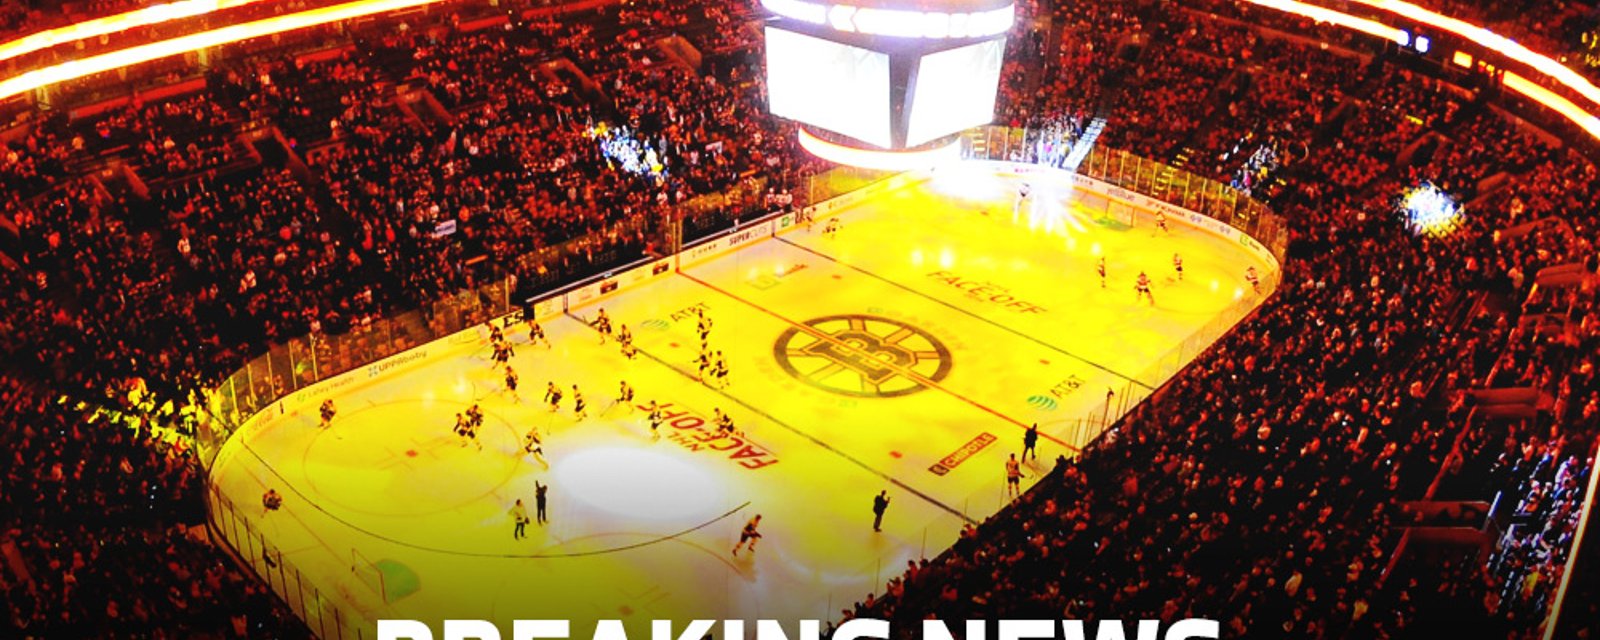 BREAKING: Bruins Rookie cutting his teeth against NHL’s top team